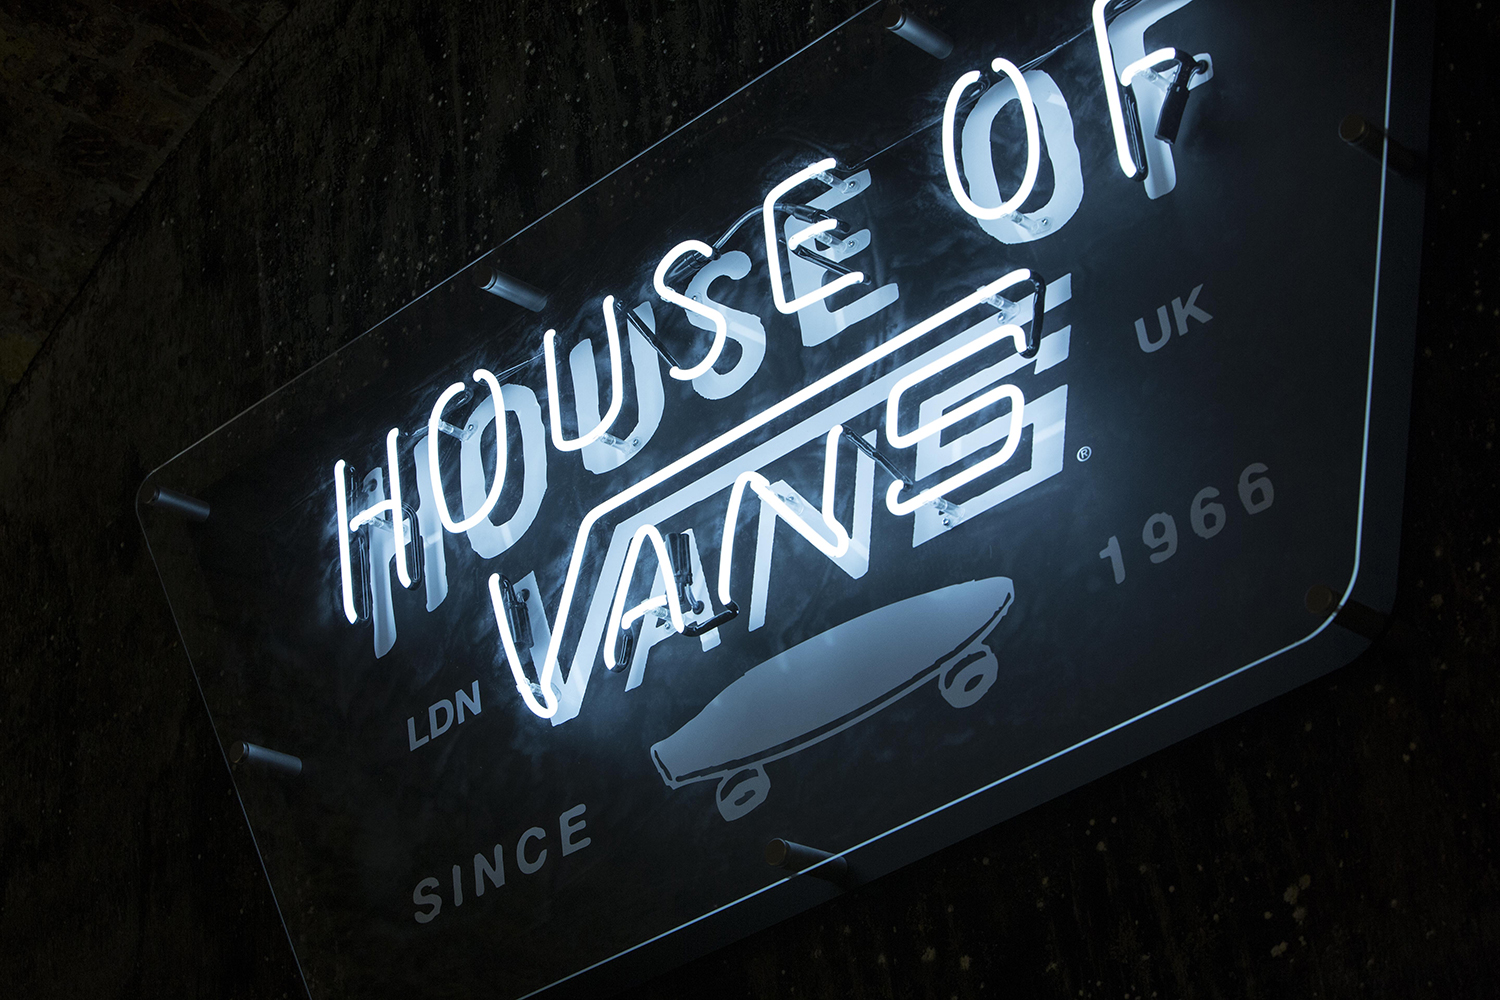 House of Vans neon lighting